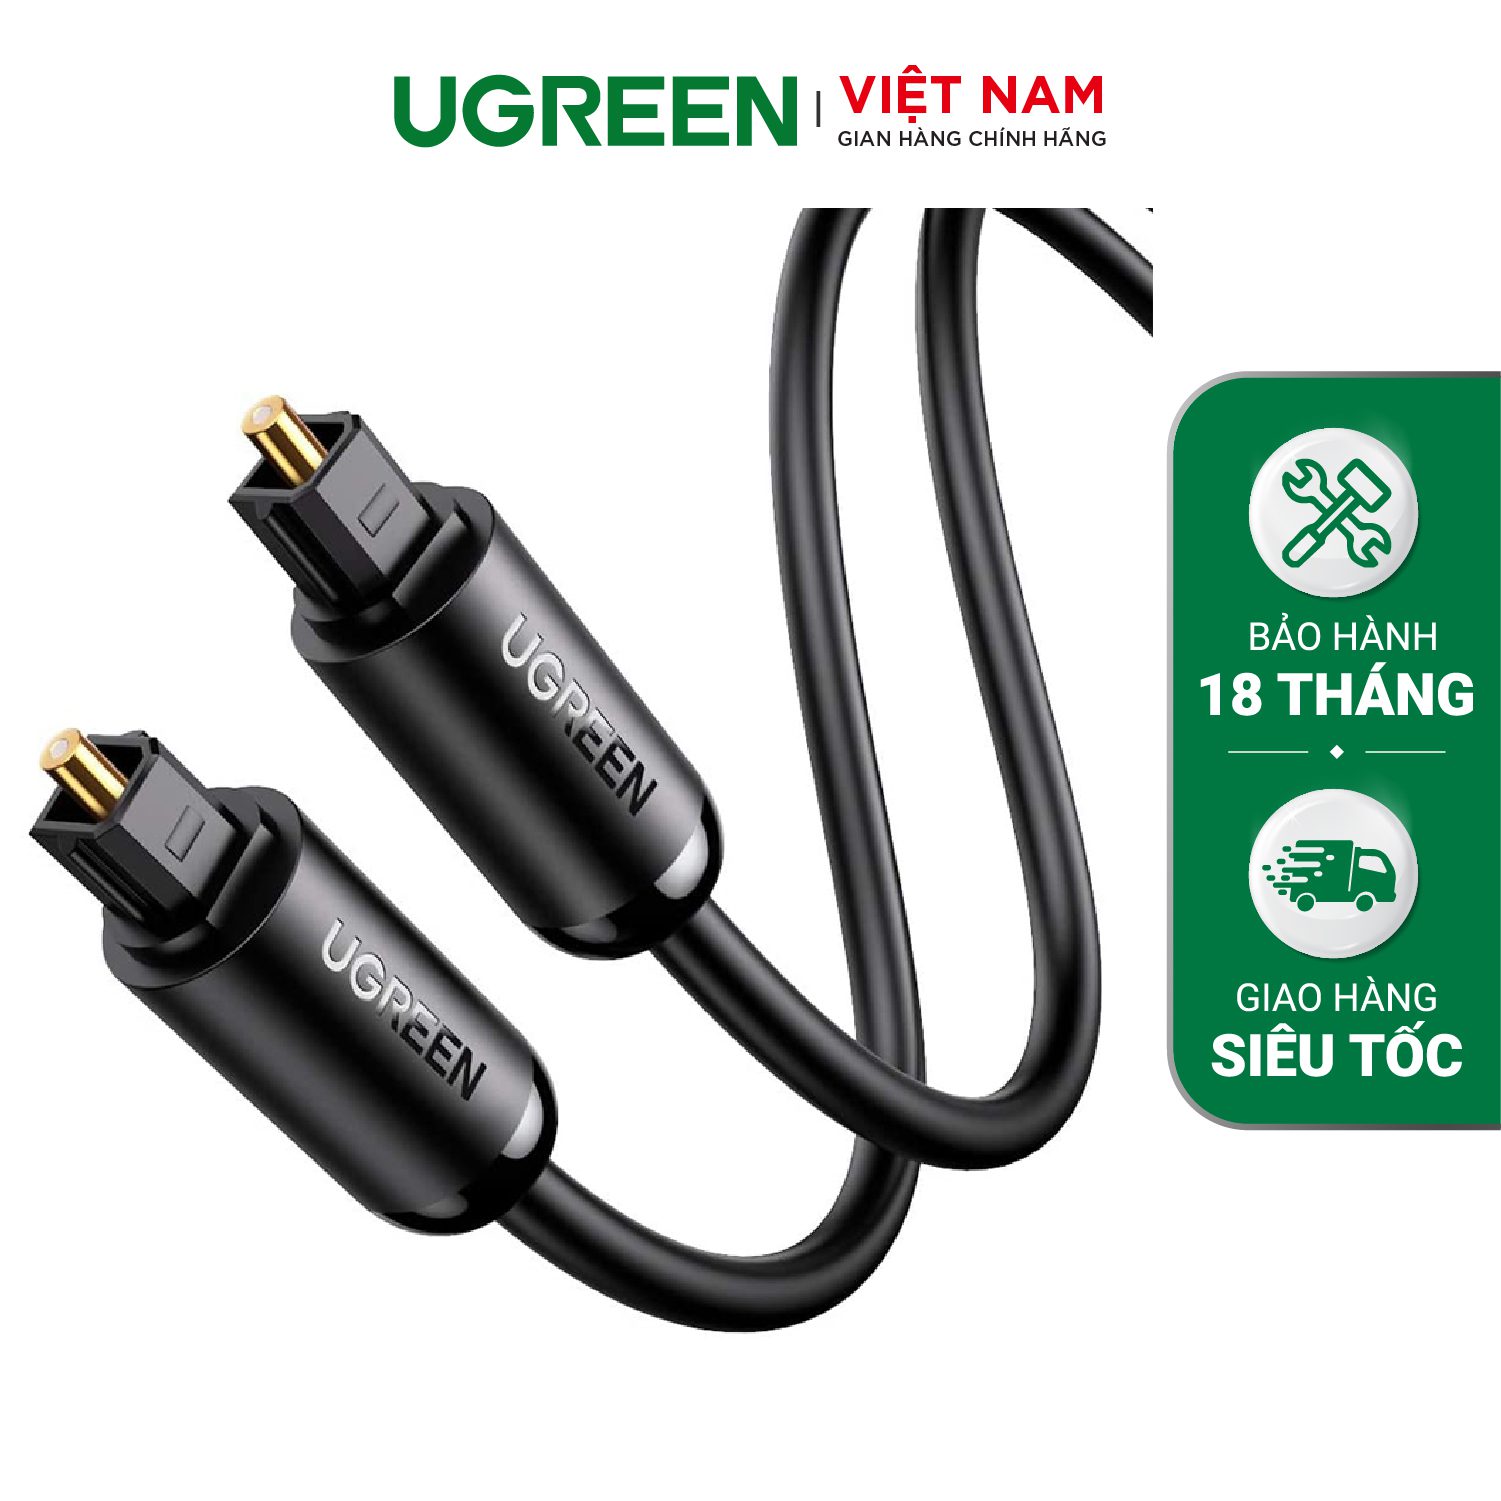 Cáp audio quang Toslink Optical UGREEN 70890 - Hỗ trợ âm thanh 5.1/ 7.1 - Đầu cáp mạ vàng – Ugreen Việt Nam